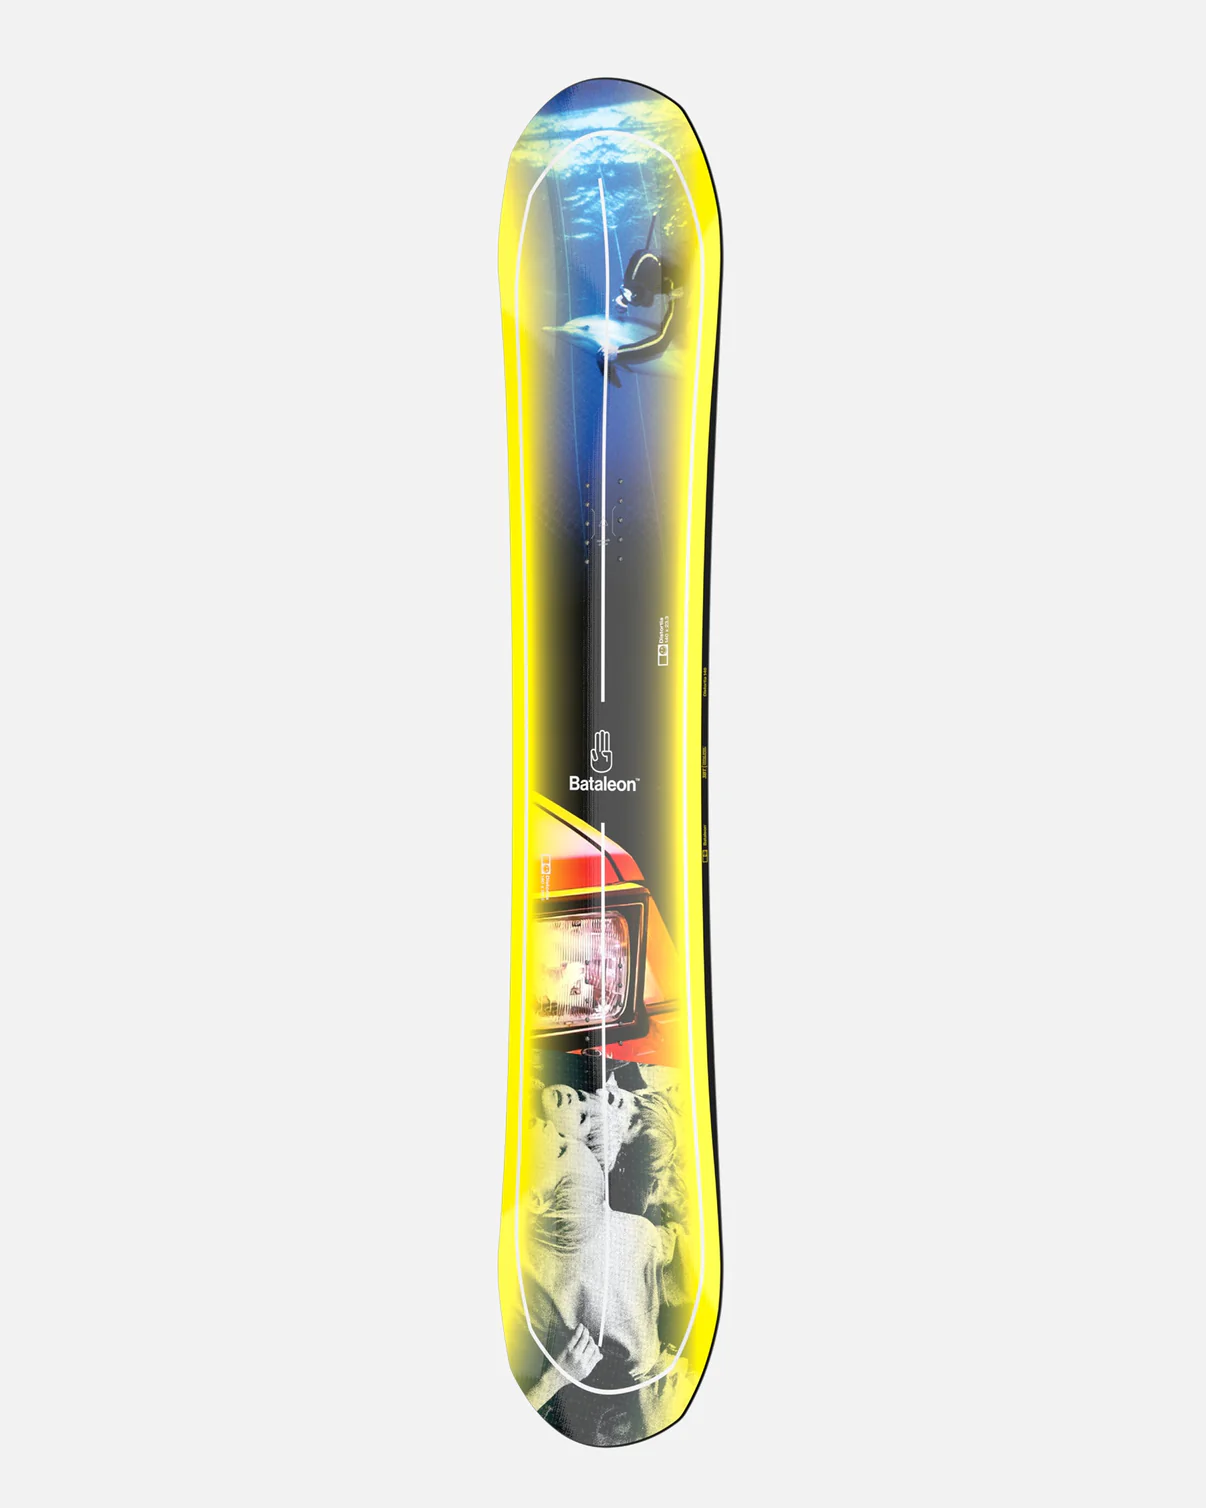 Bataleon Distortia snowboard